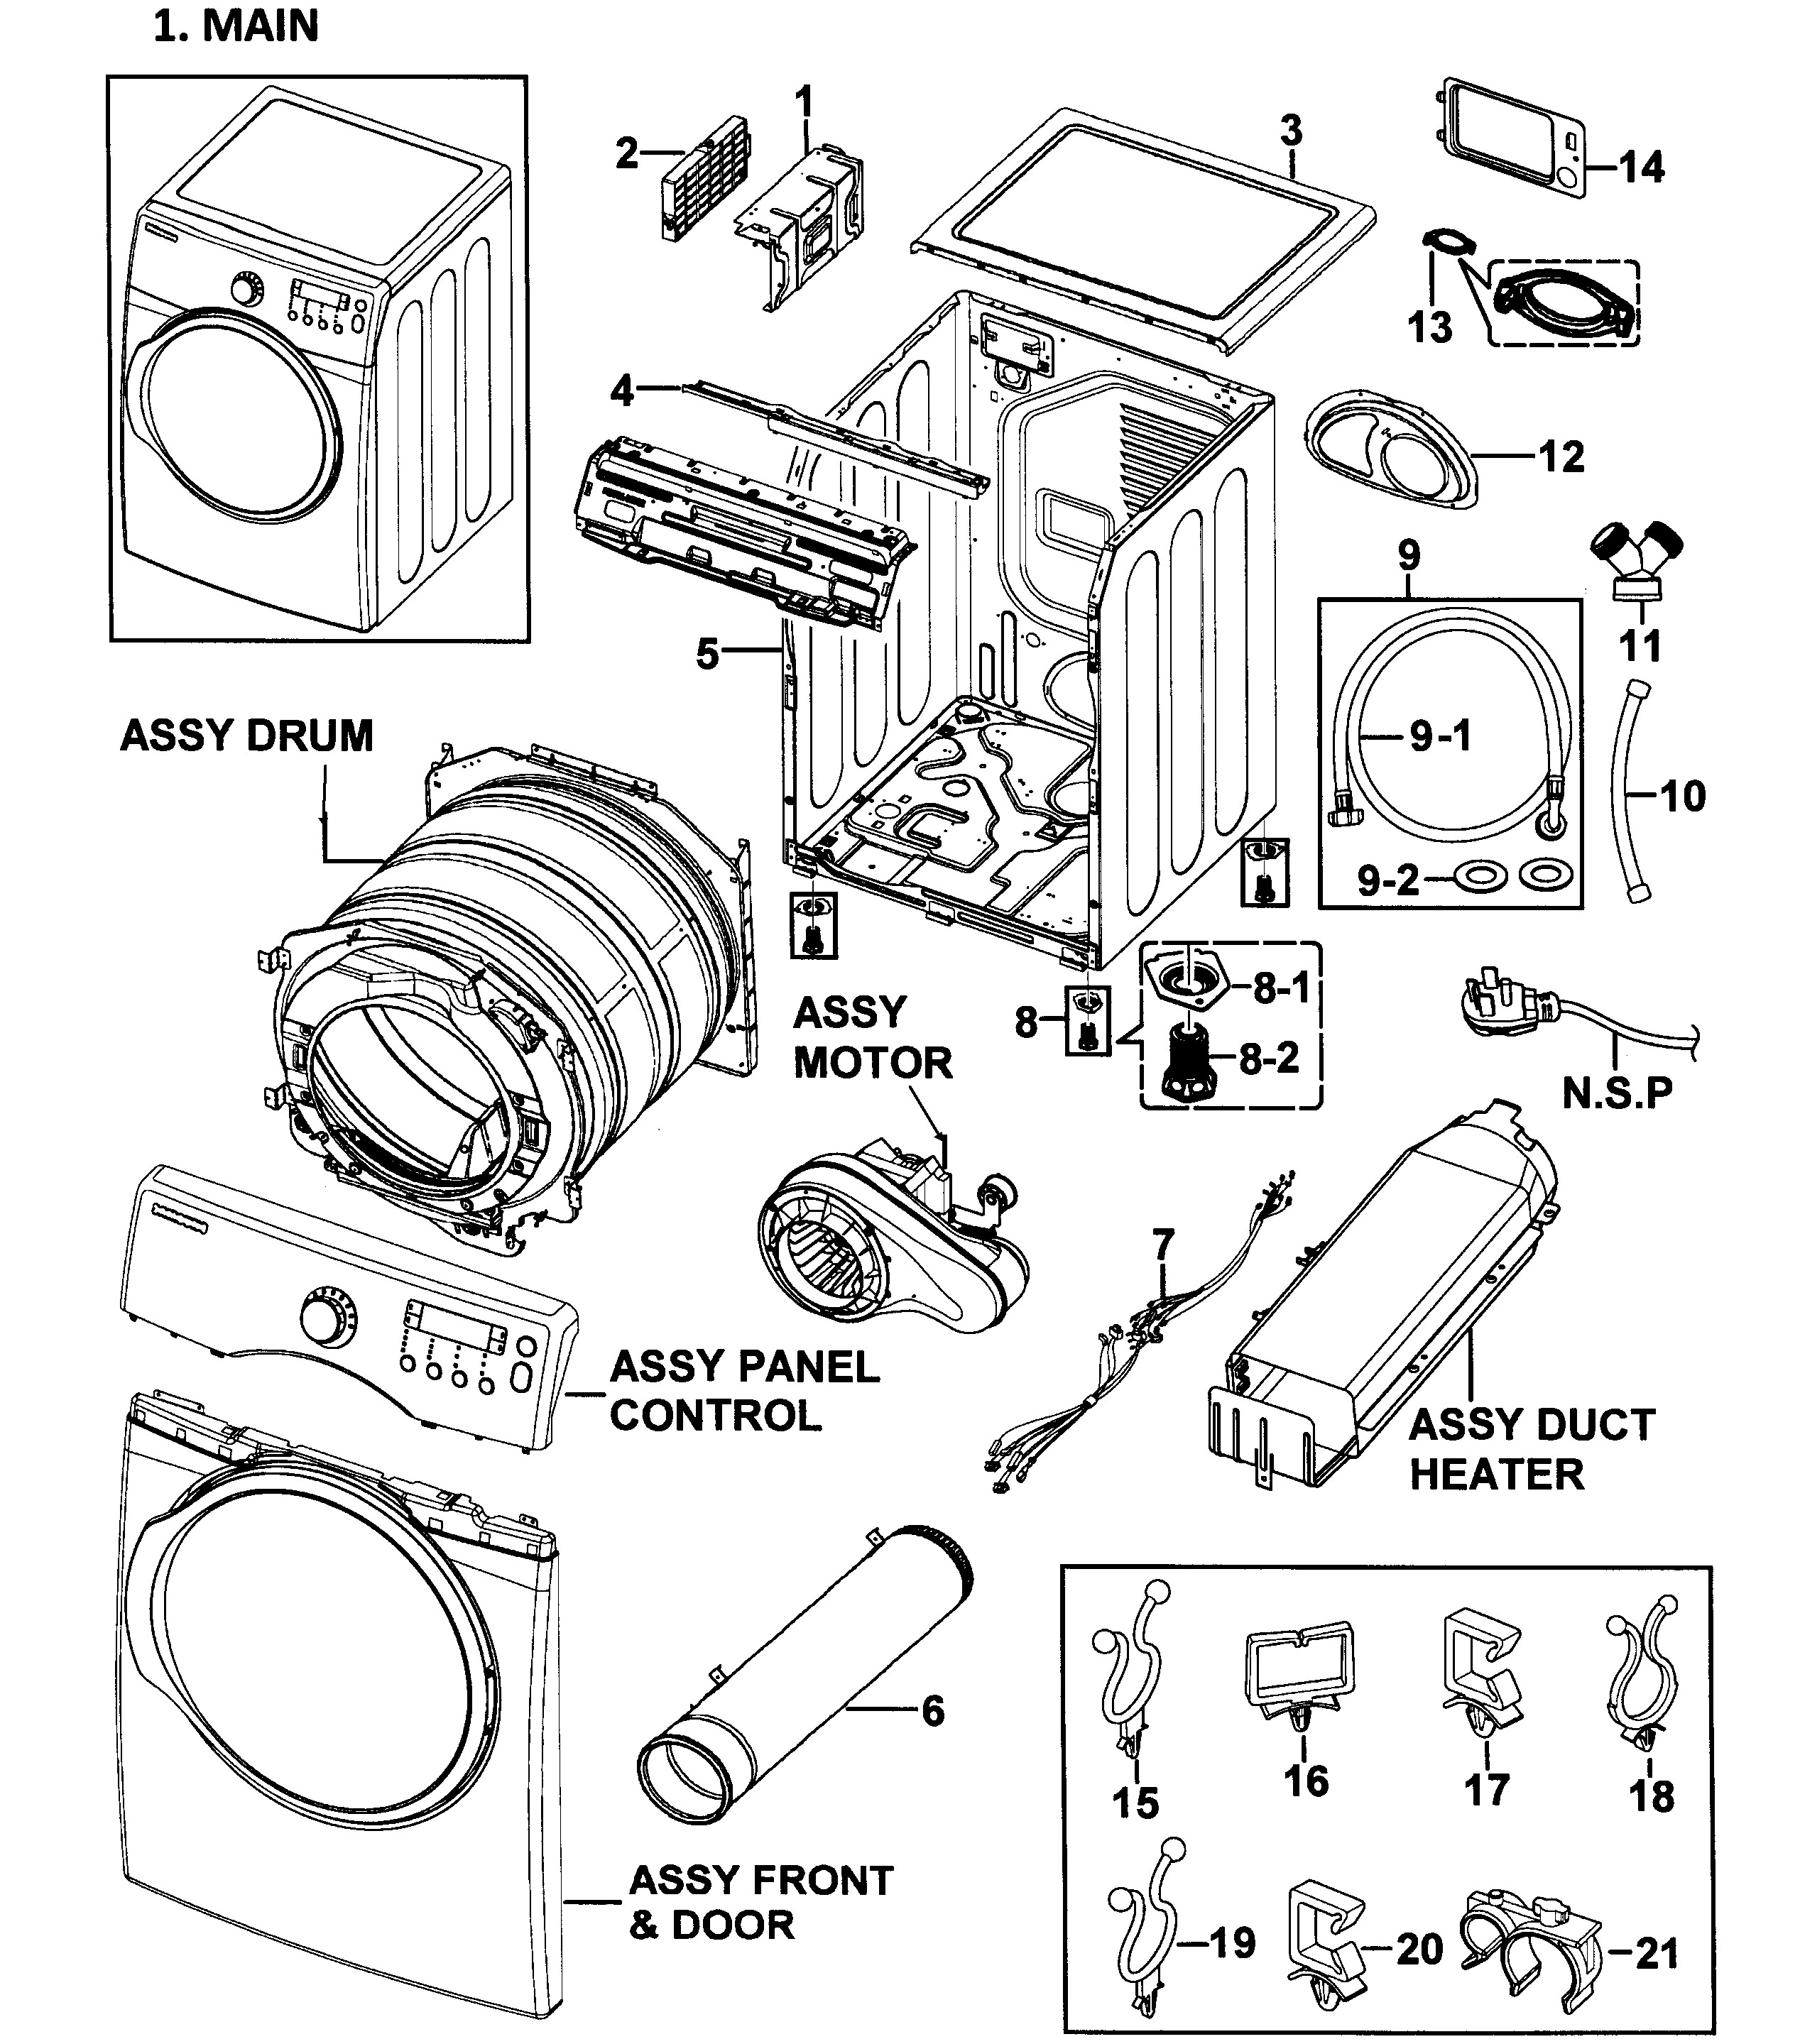 [DIAGRAM] Schematic Dryer Wiring Samsung Diagram Xaa Dv21oaew ...